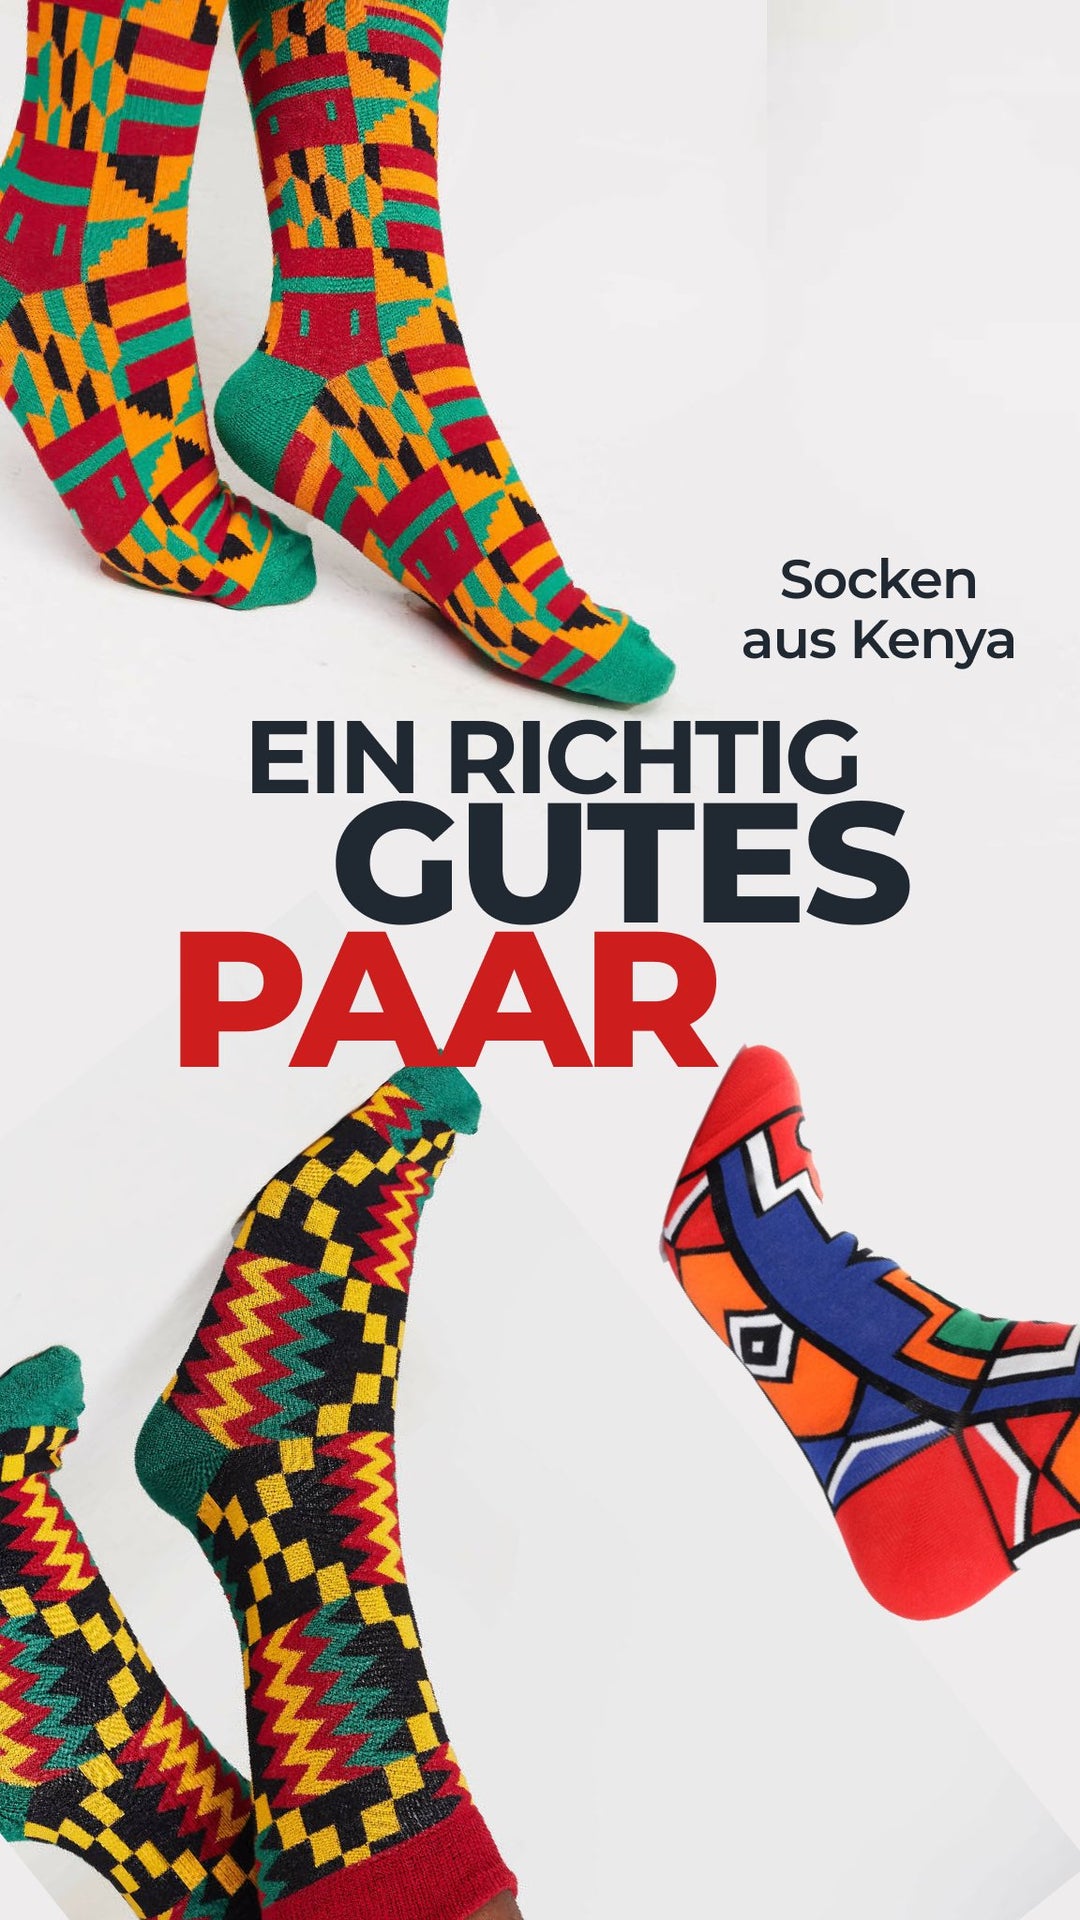 Socken made in Kenya - mikono.africa Jacken aus Kenia